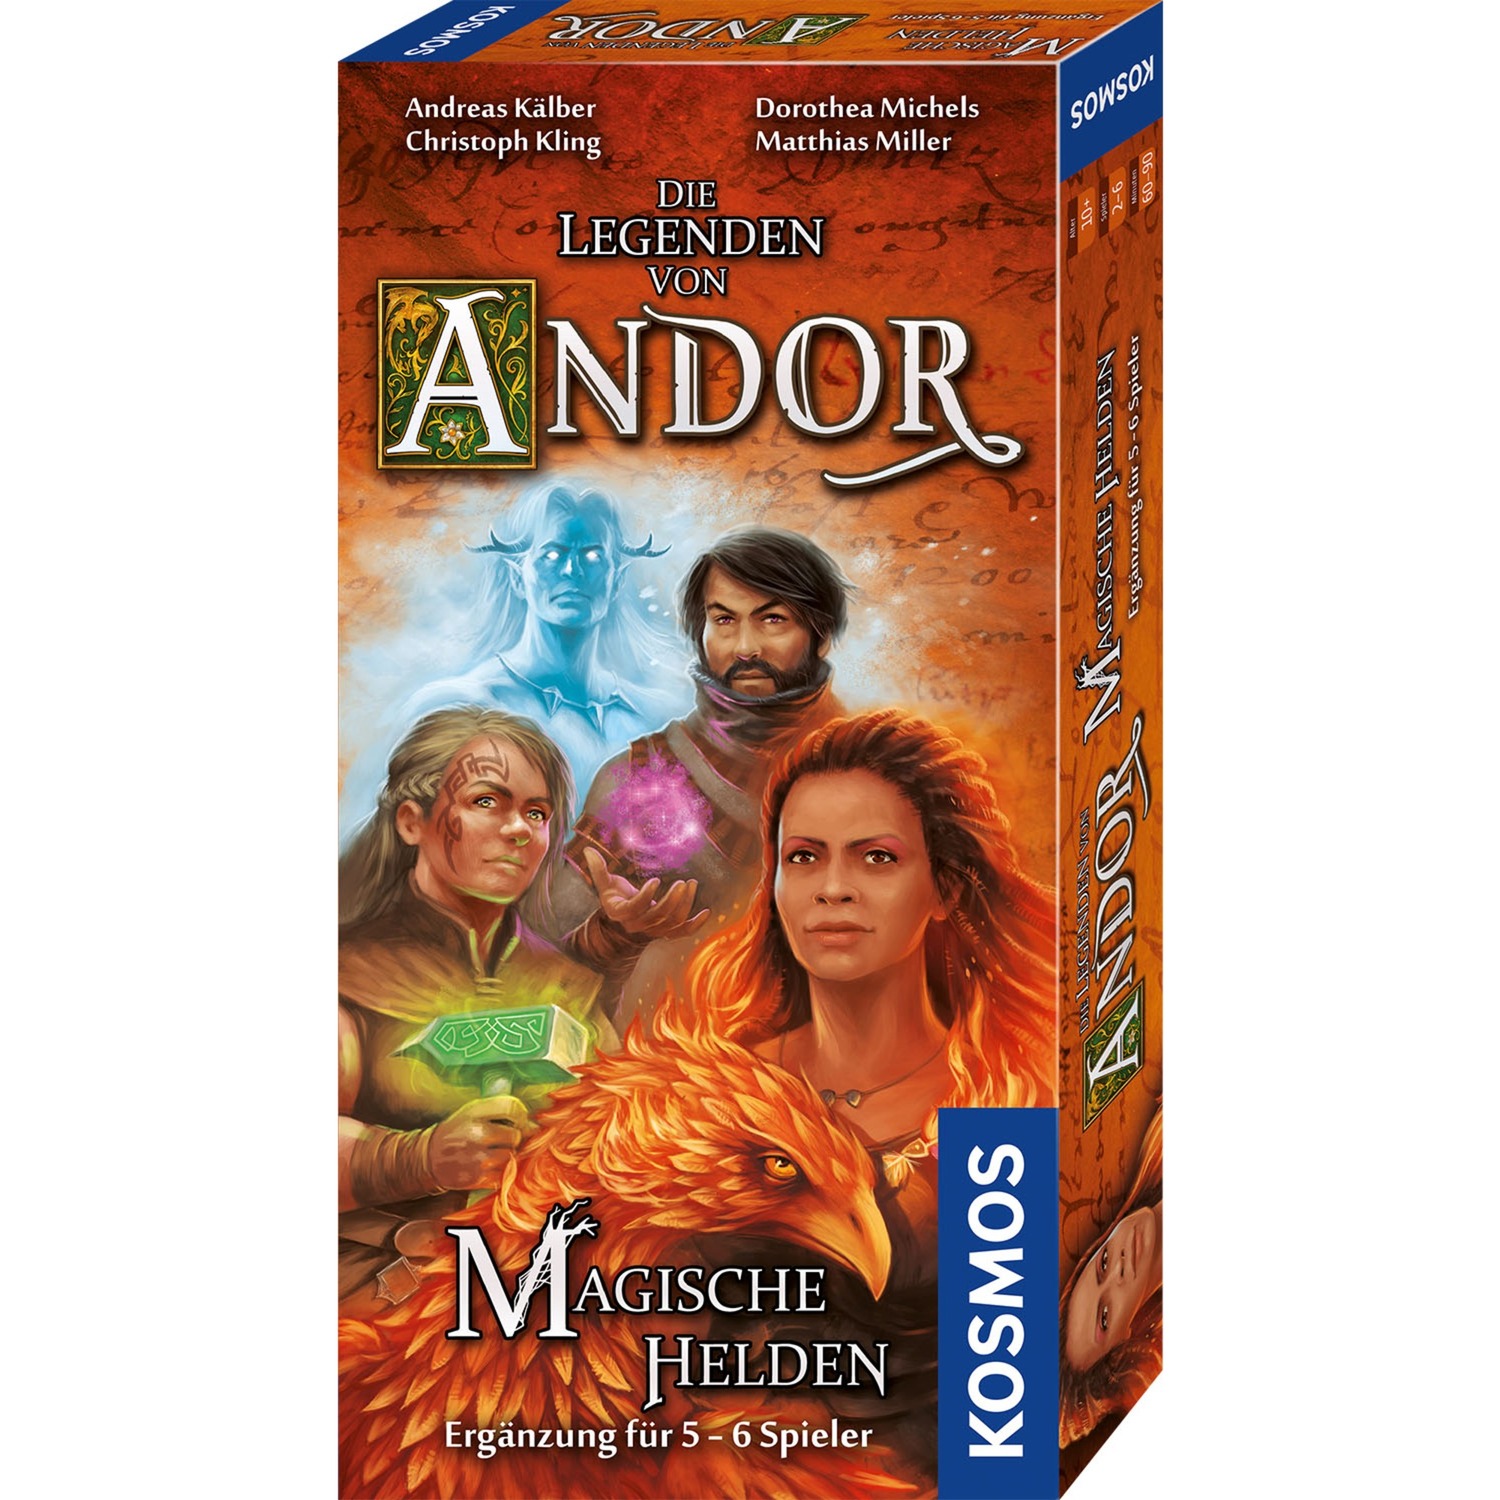 Image of Alternate - Die Legenden von Andor - Magische Helden, Brettspiel online einkaufen bei Alternate